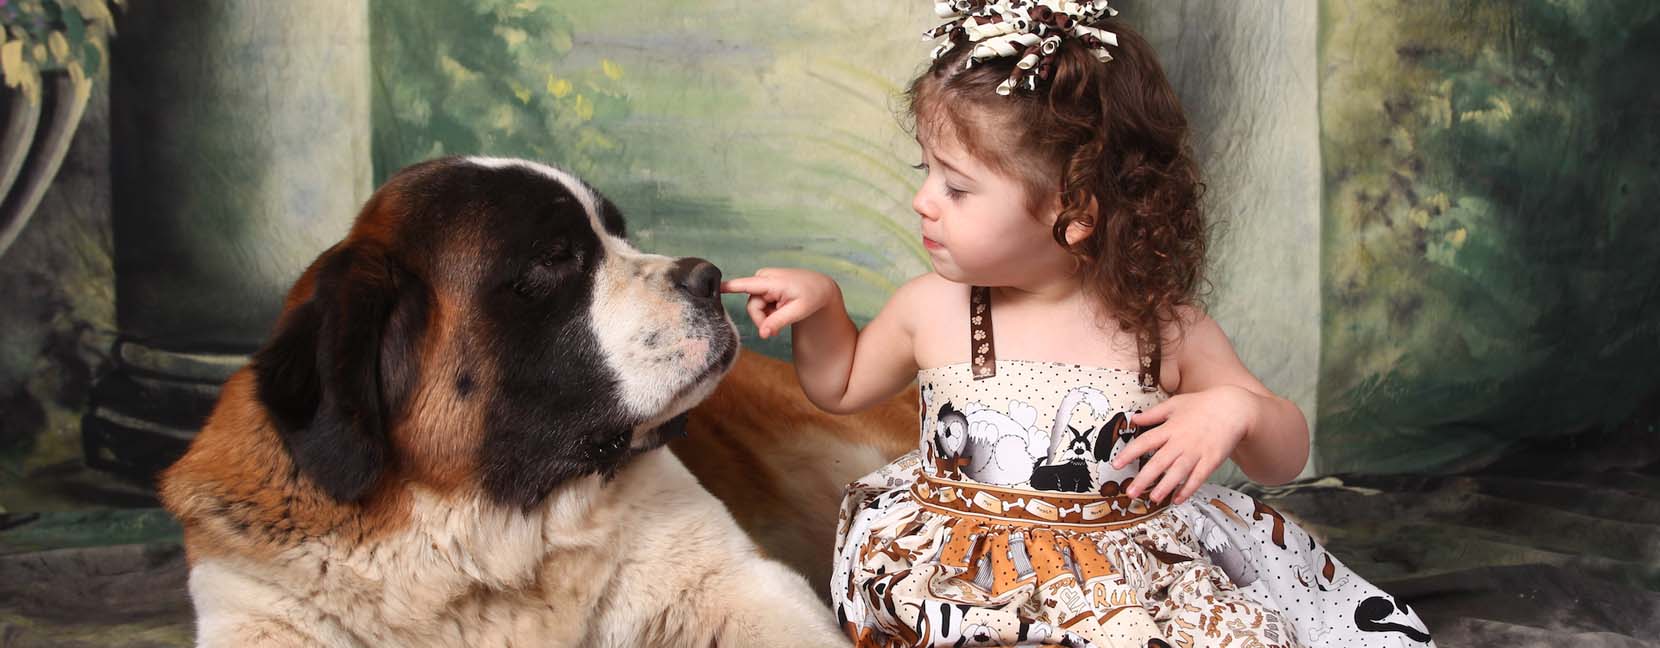 Bambina che tocca il naso di un grosso cane tranquillo